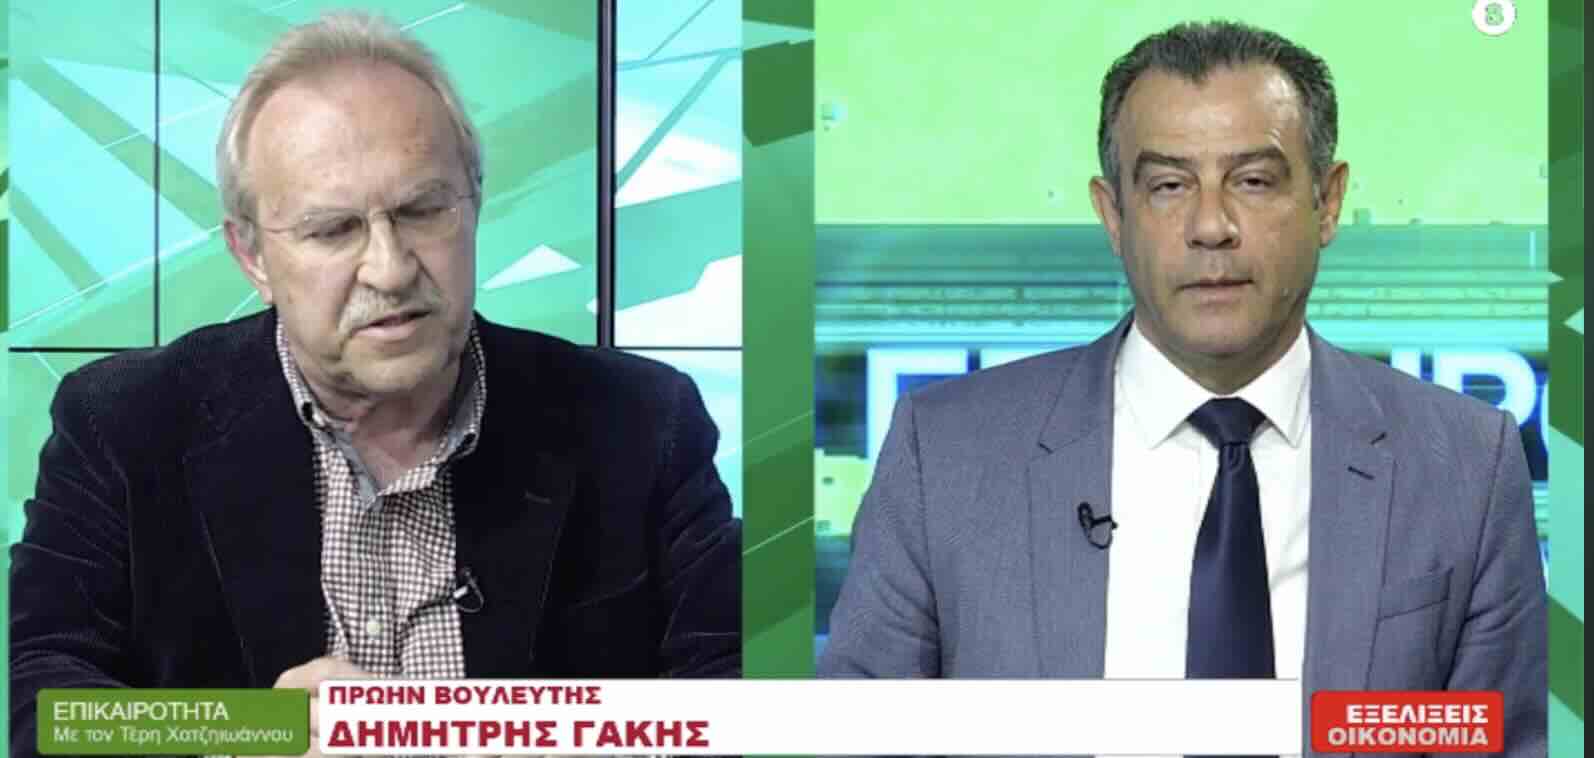 Ο Δημήτρης Γάκης με τη ΝΕΑ ΑΡΙΣΤΕΡΑ σχολιάζει τις πολιτικές εξελίξεις